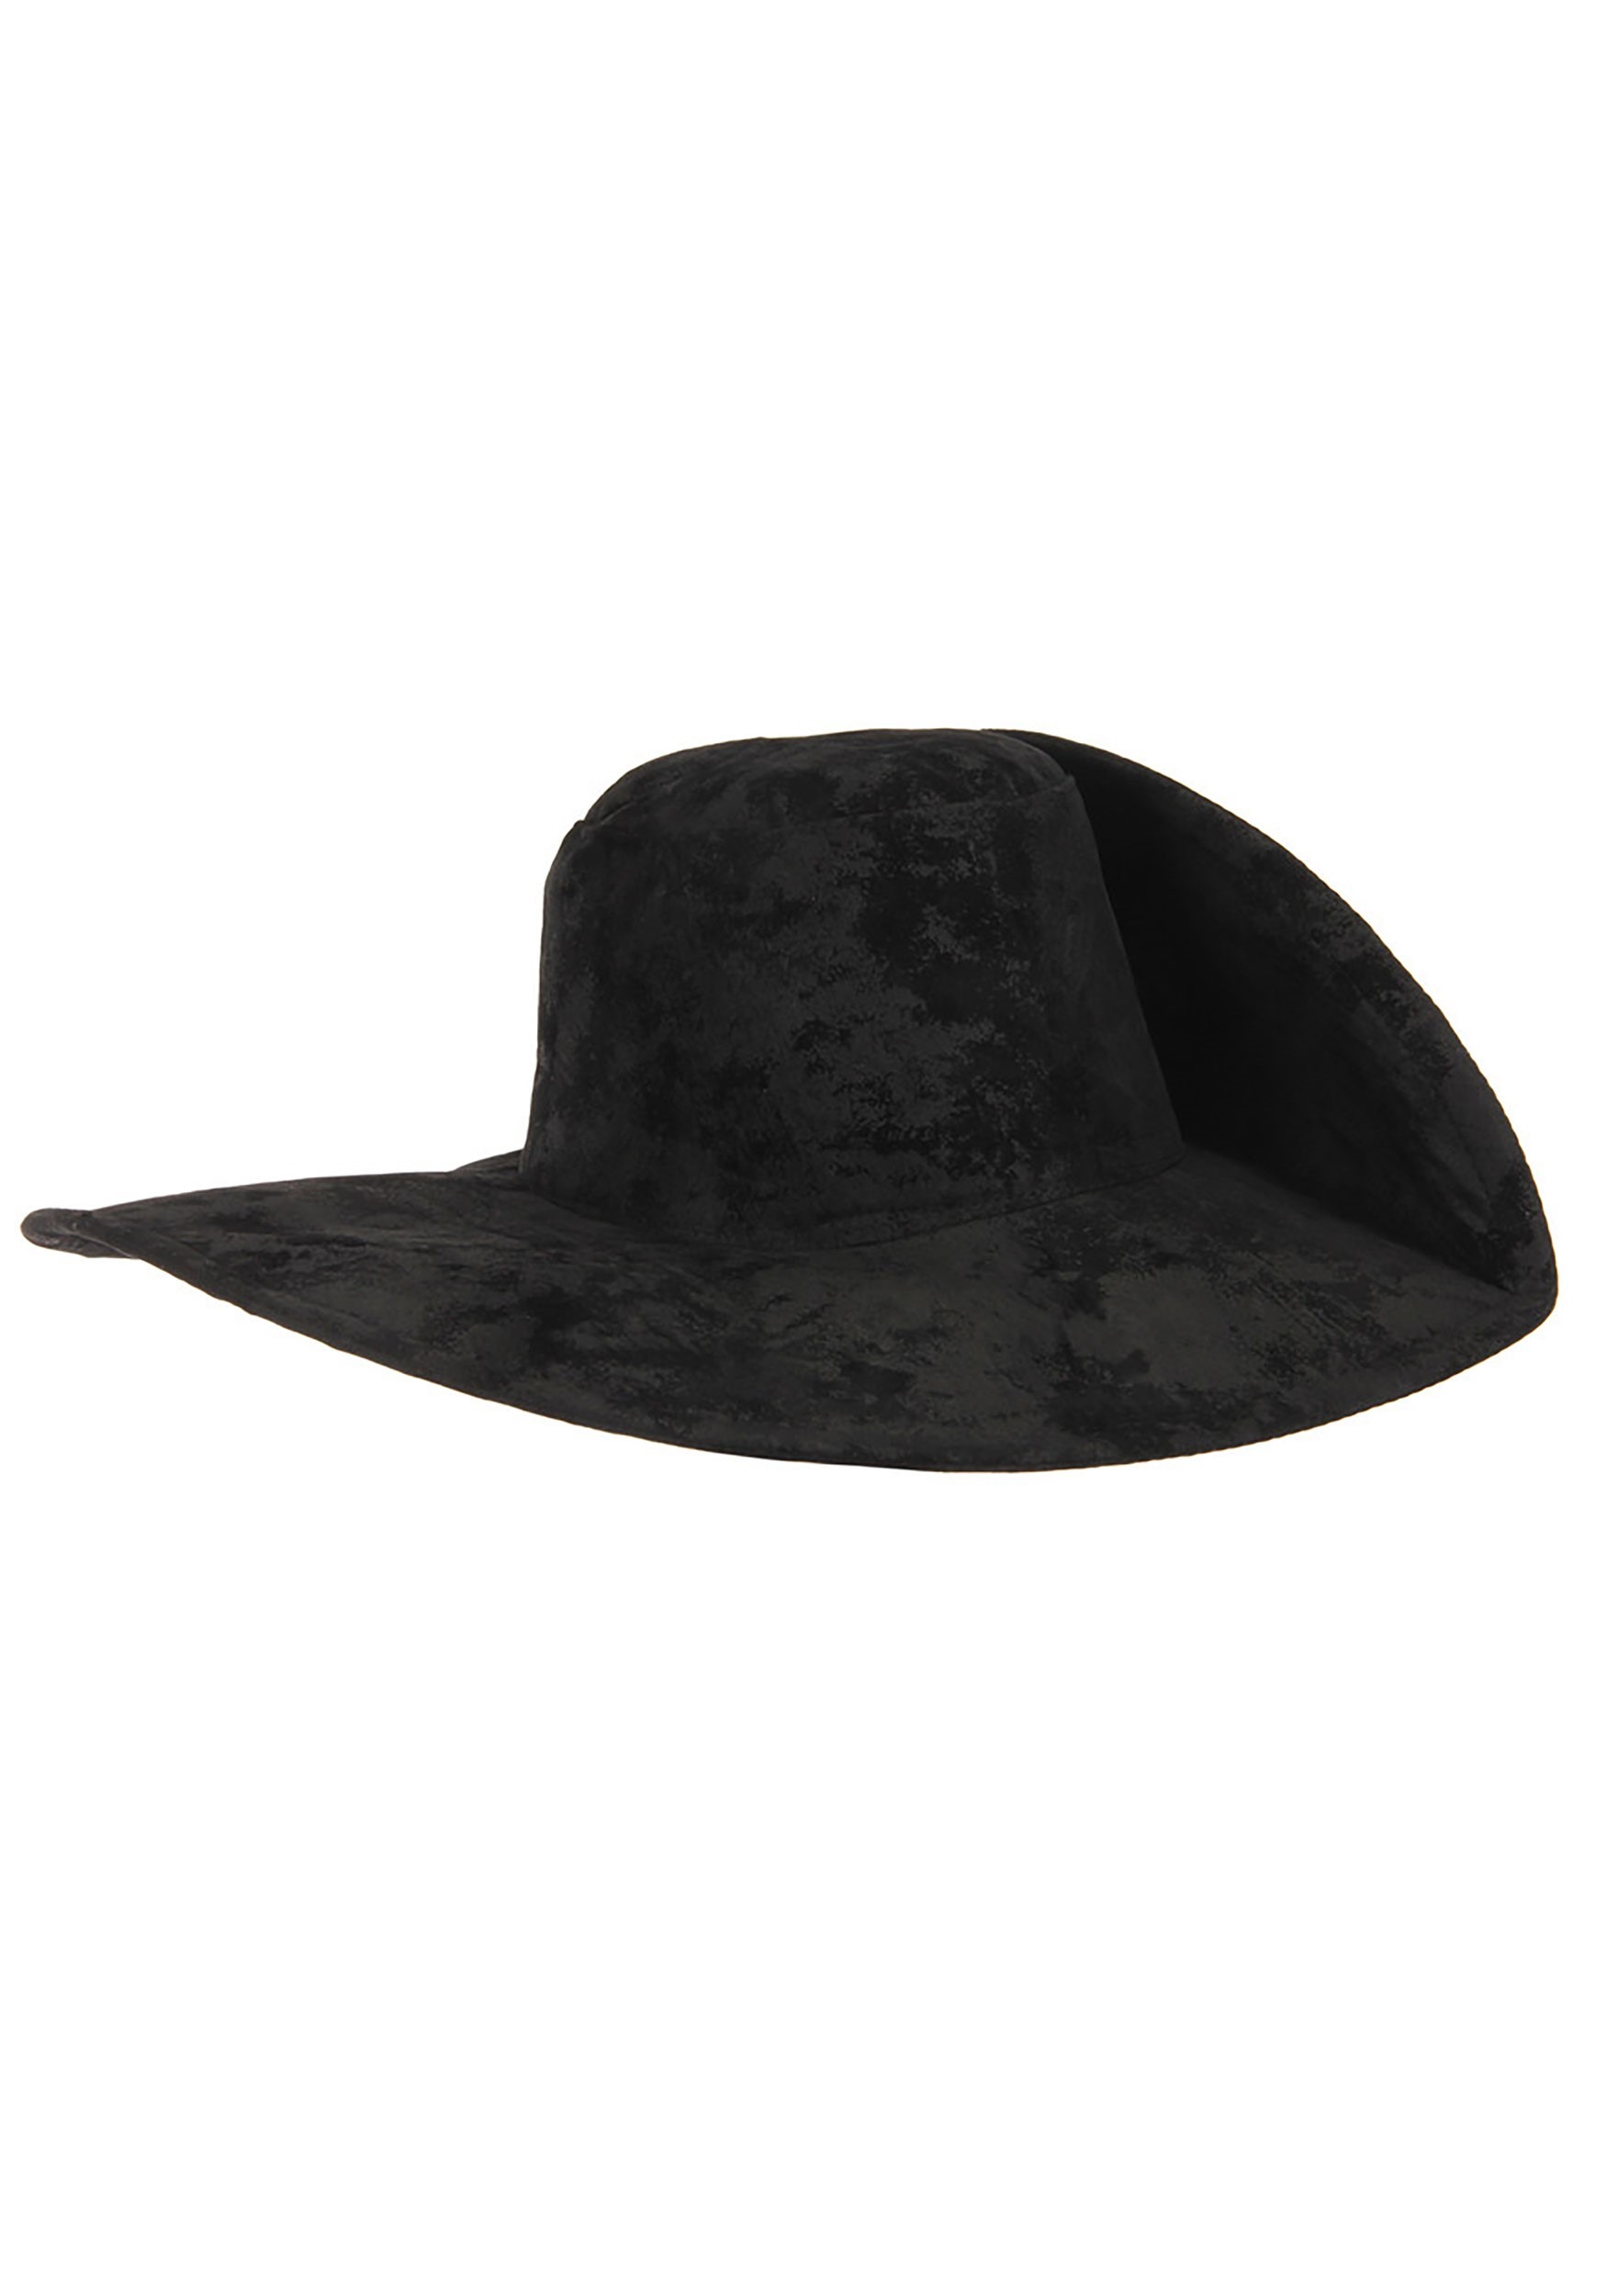 Black Musketeer Costume Hat